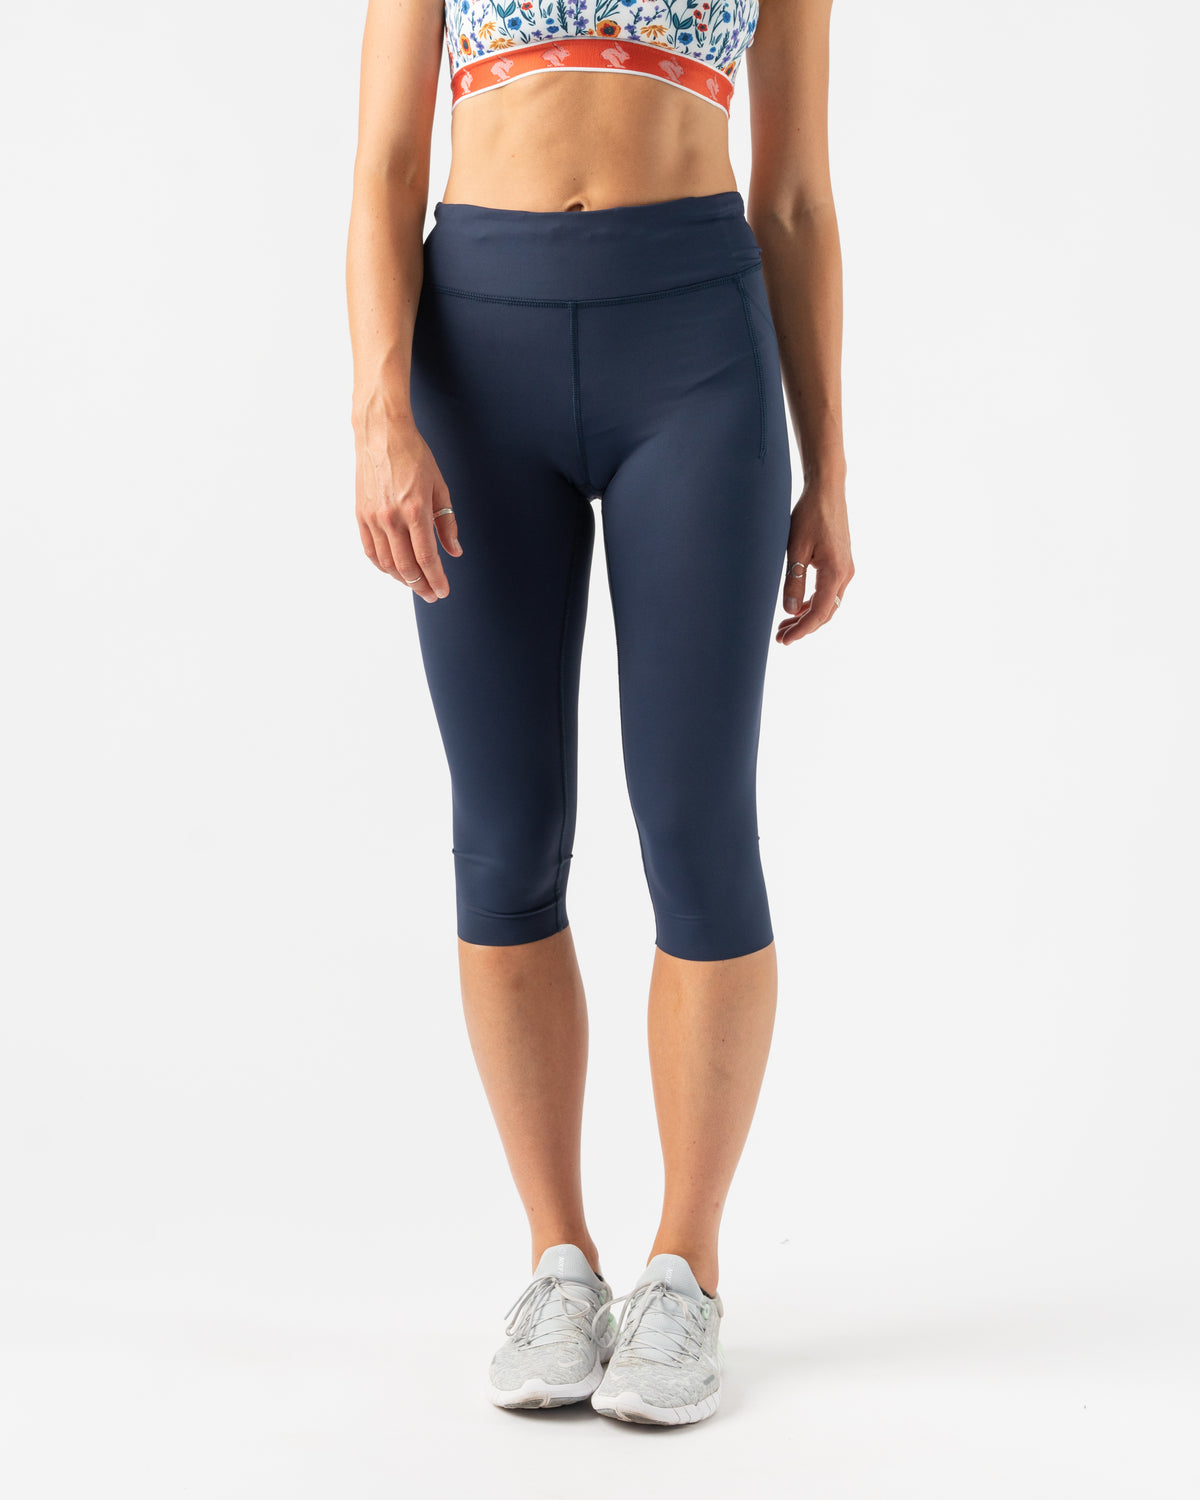 Women's Running Pants, Blue